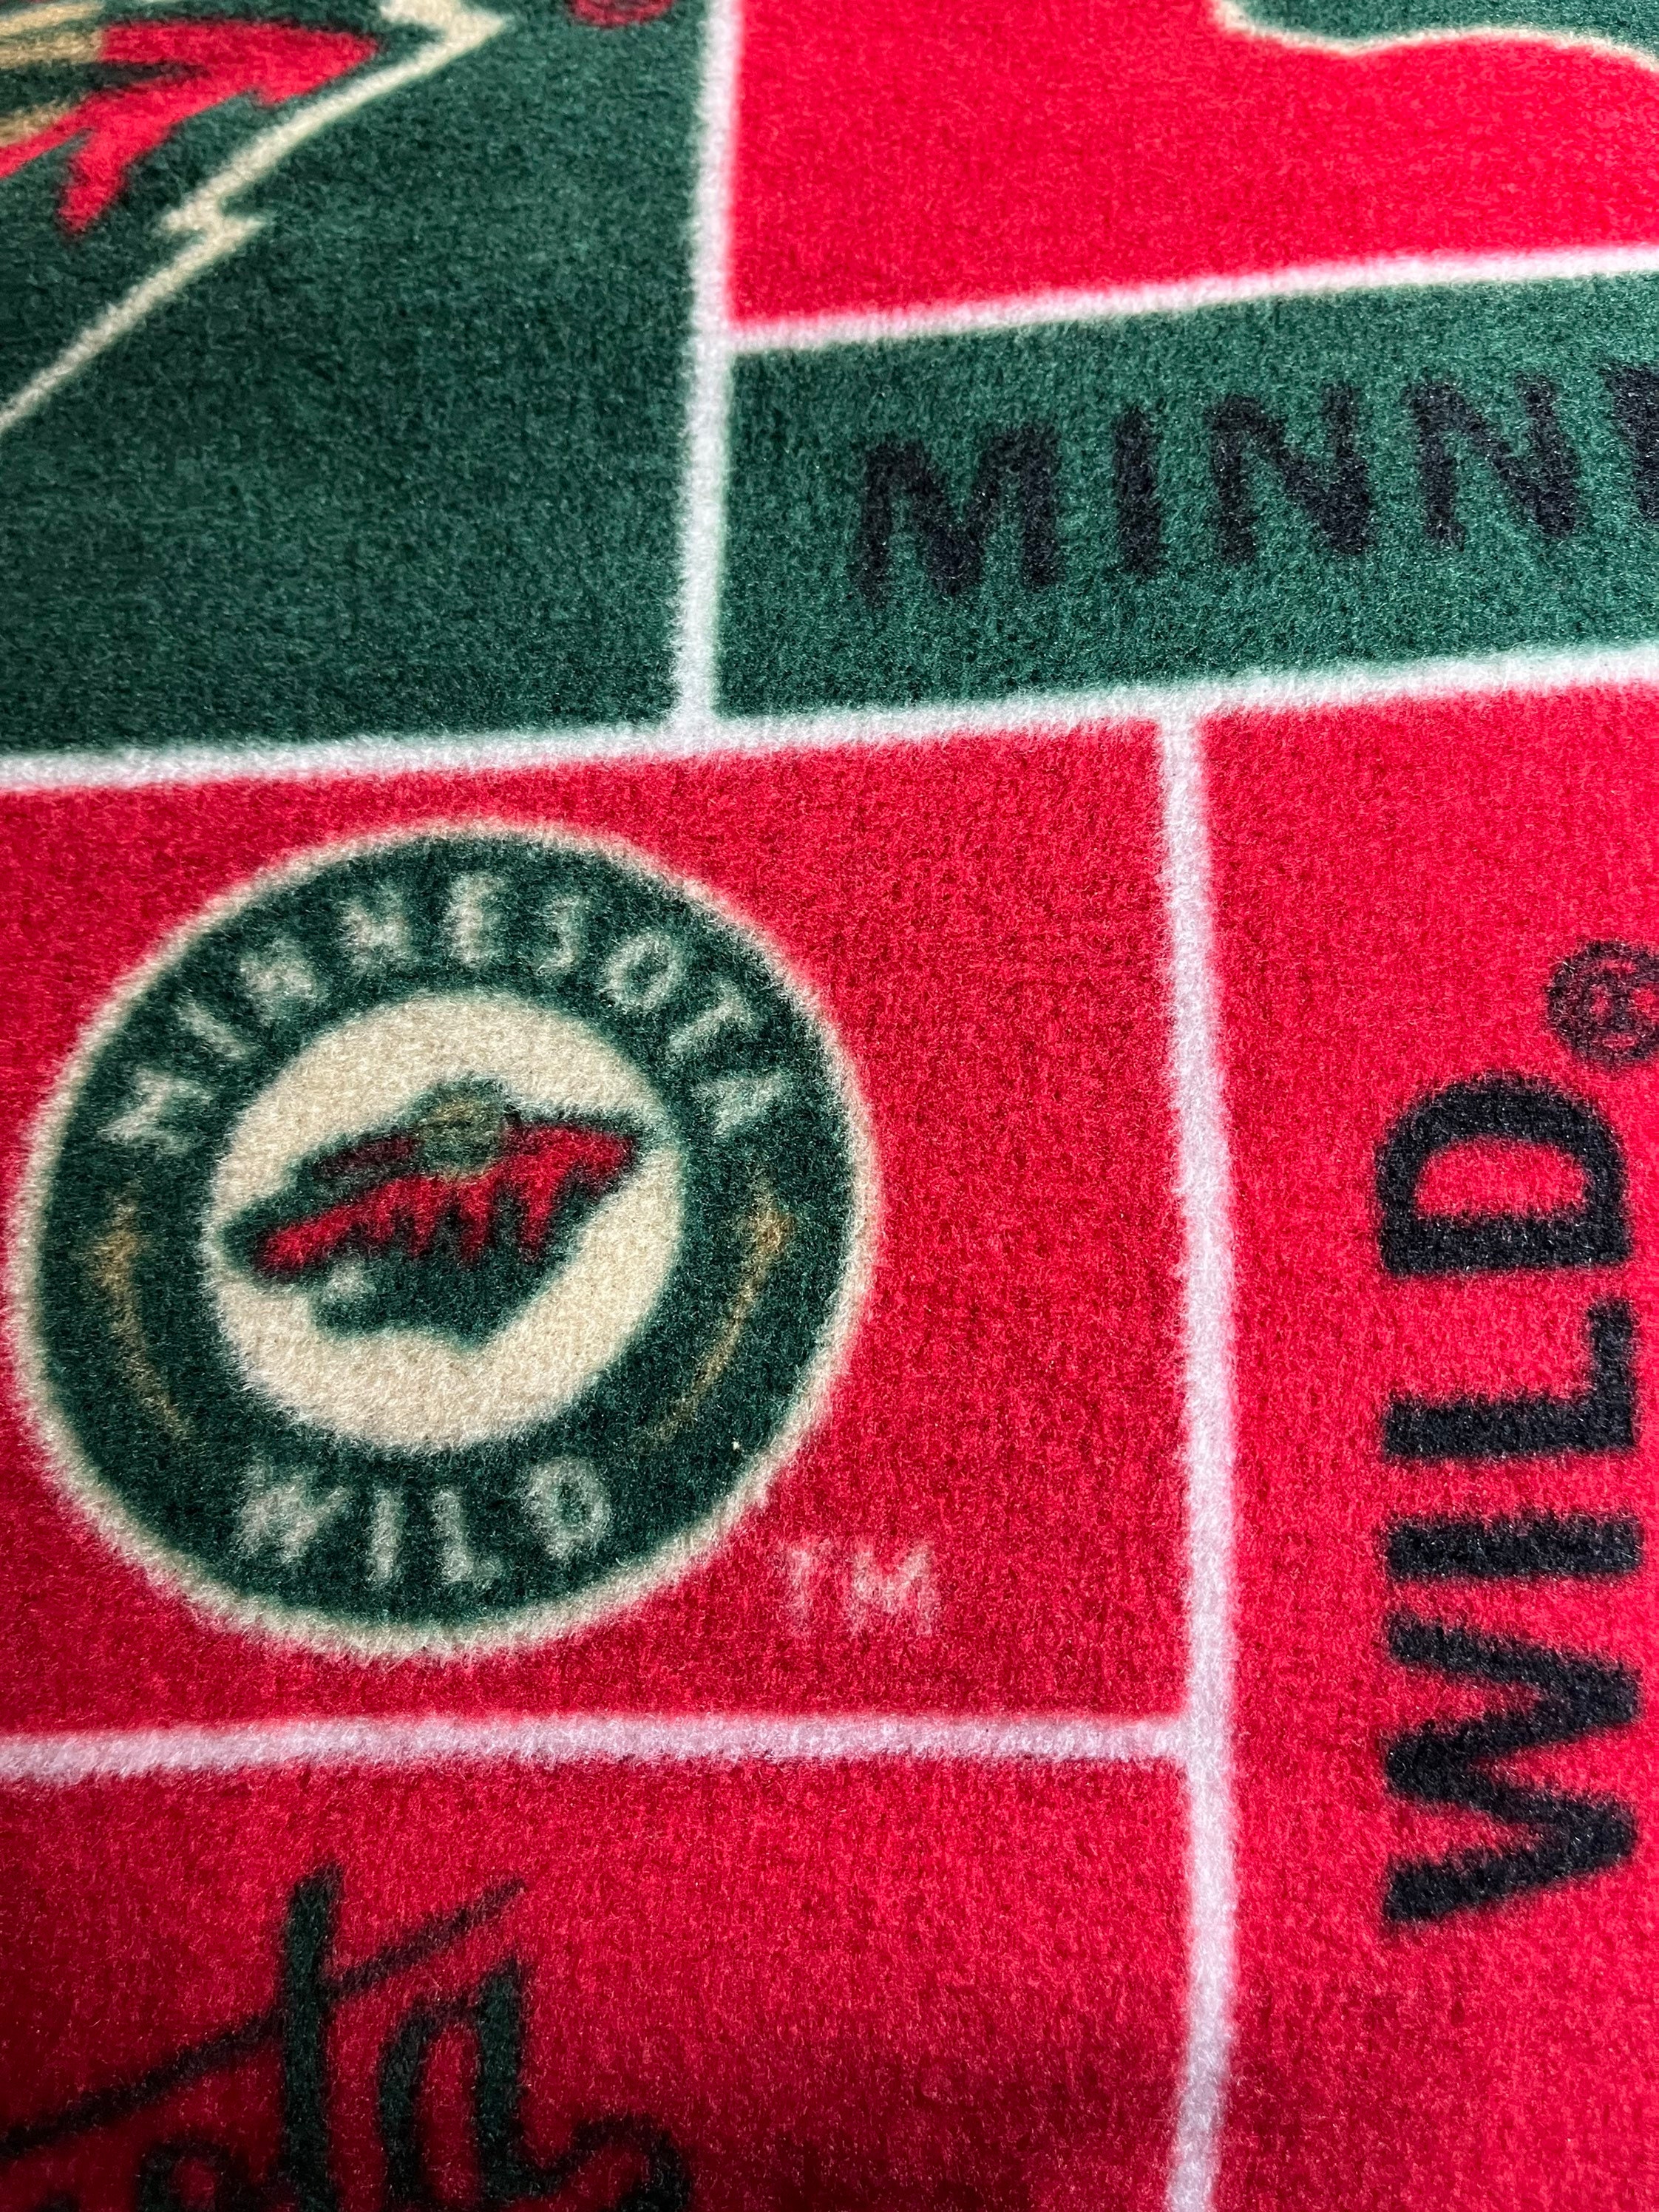 Here's the Wild/Northstars mashup sweater-inspired phone wallpaper :  r/wildhockey